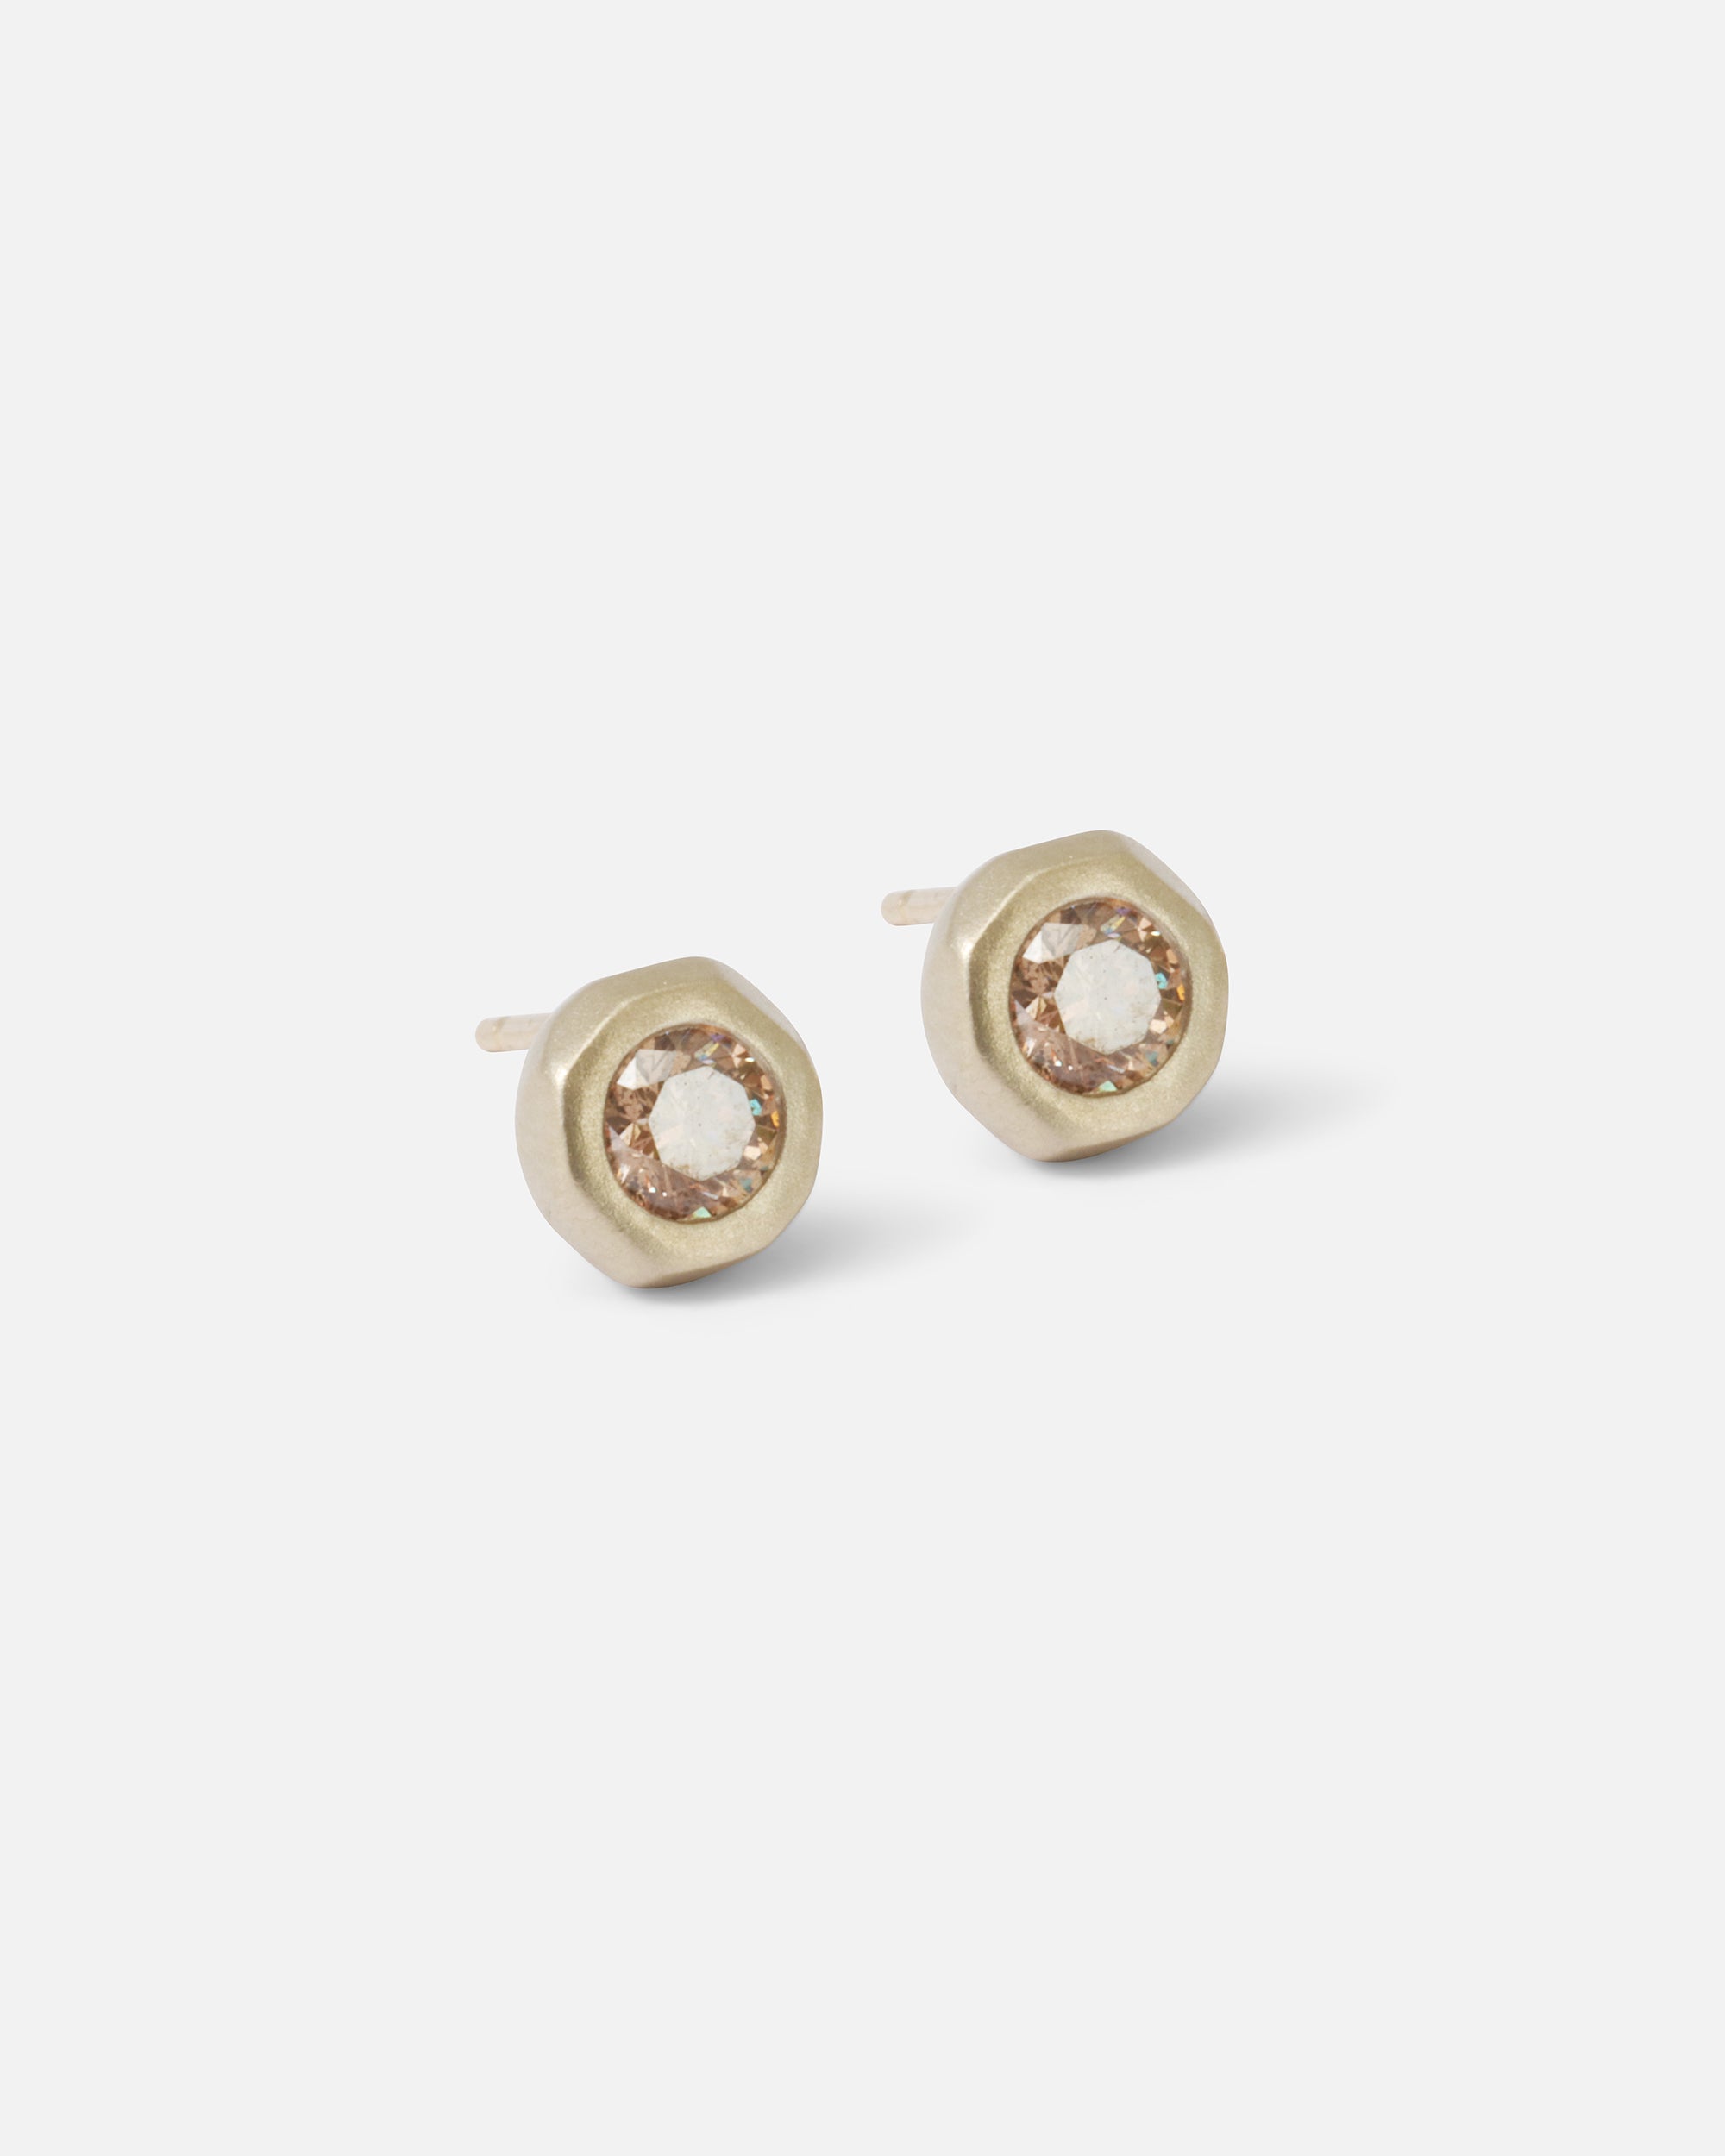 Pebble / 4mm Stud Earrings By Hiroyo in earrings Category